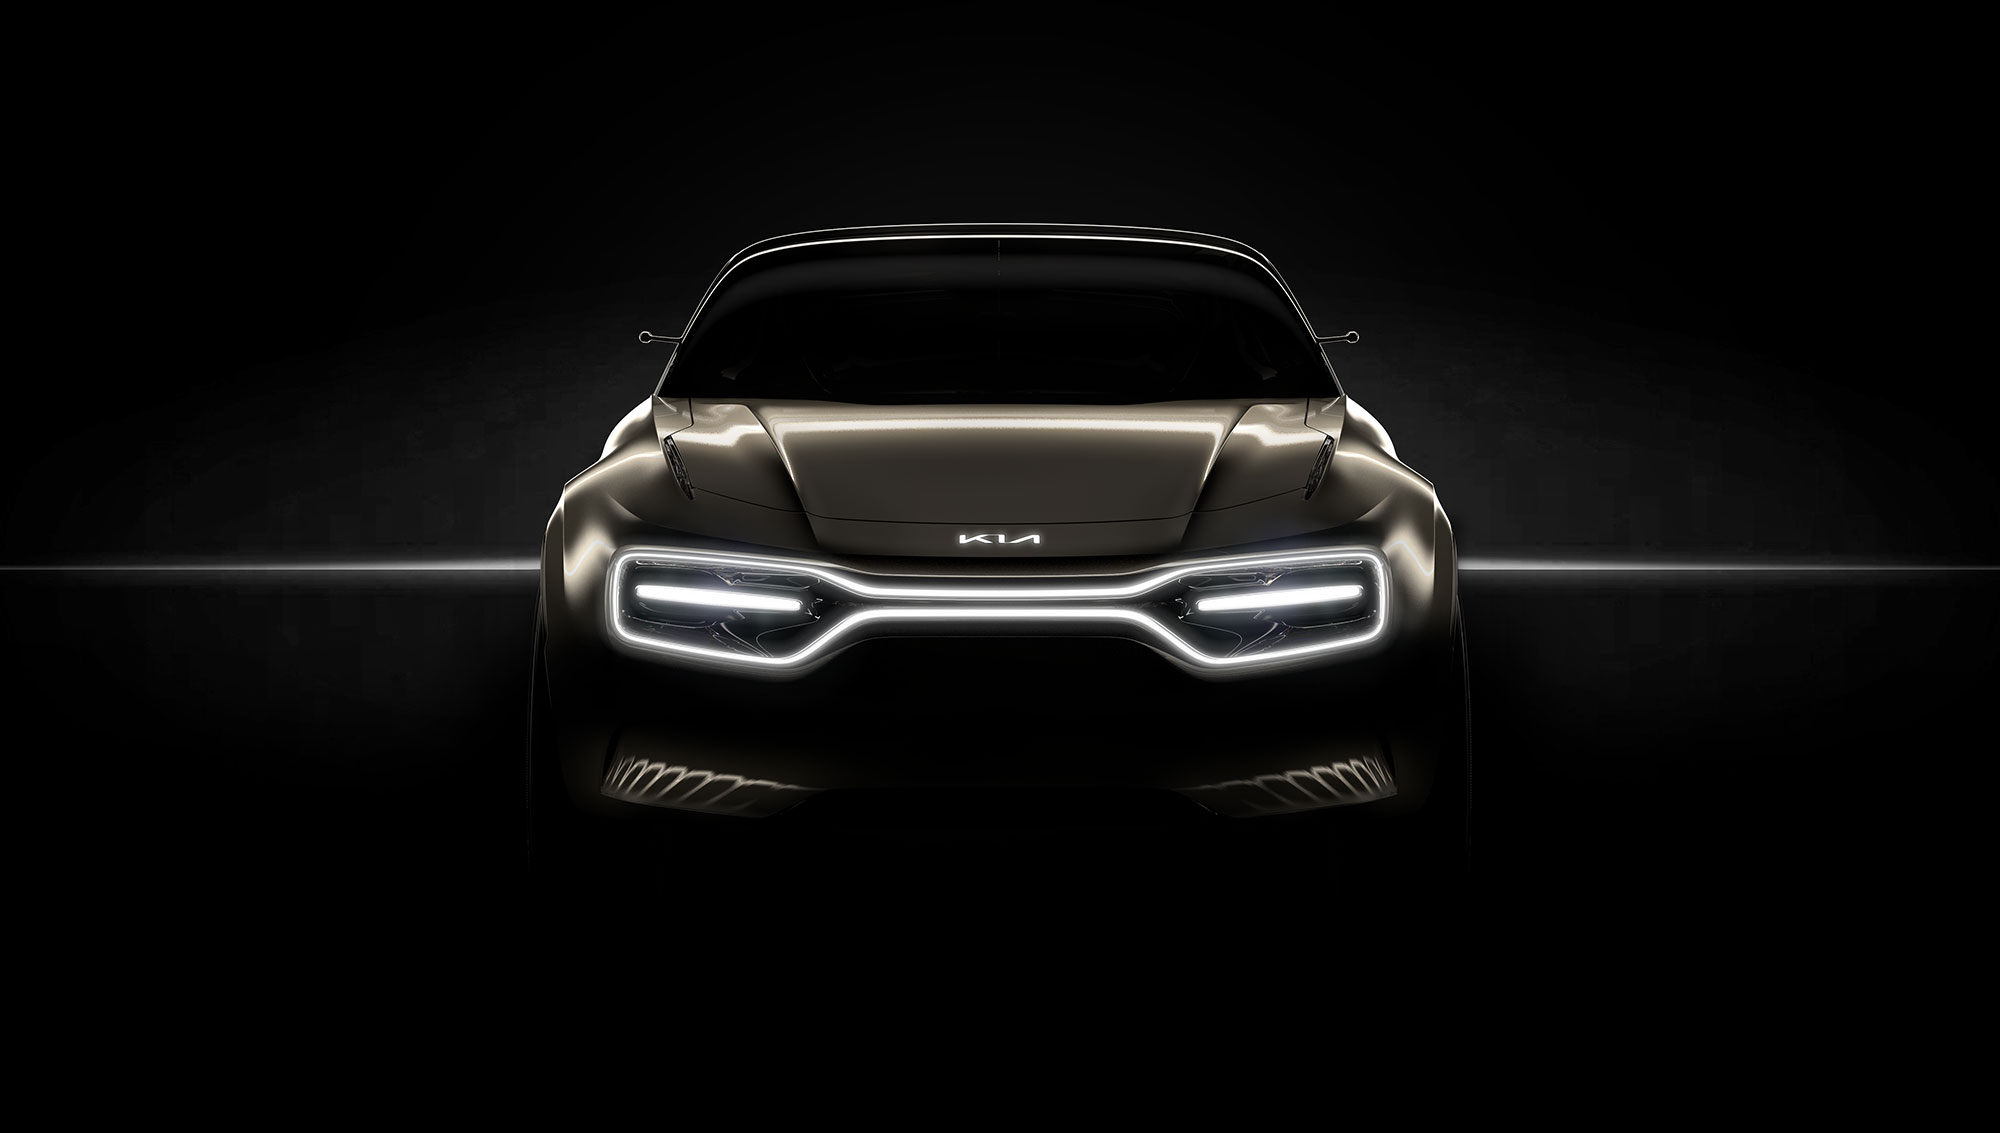 Kia Motors Europe je pokazala nove fotografije svog novog potpuno električnog koncept vozila, koje će biti predstavljeno  na salonu automobila u Ženevi.